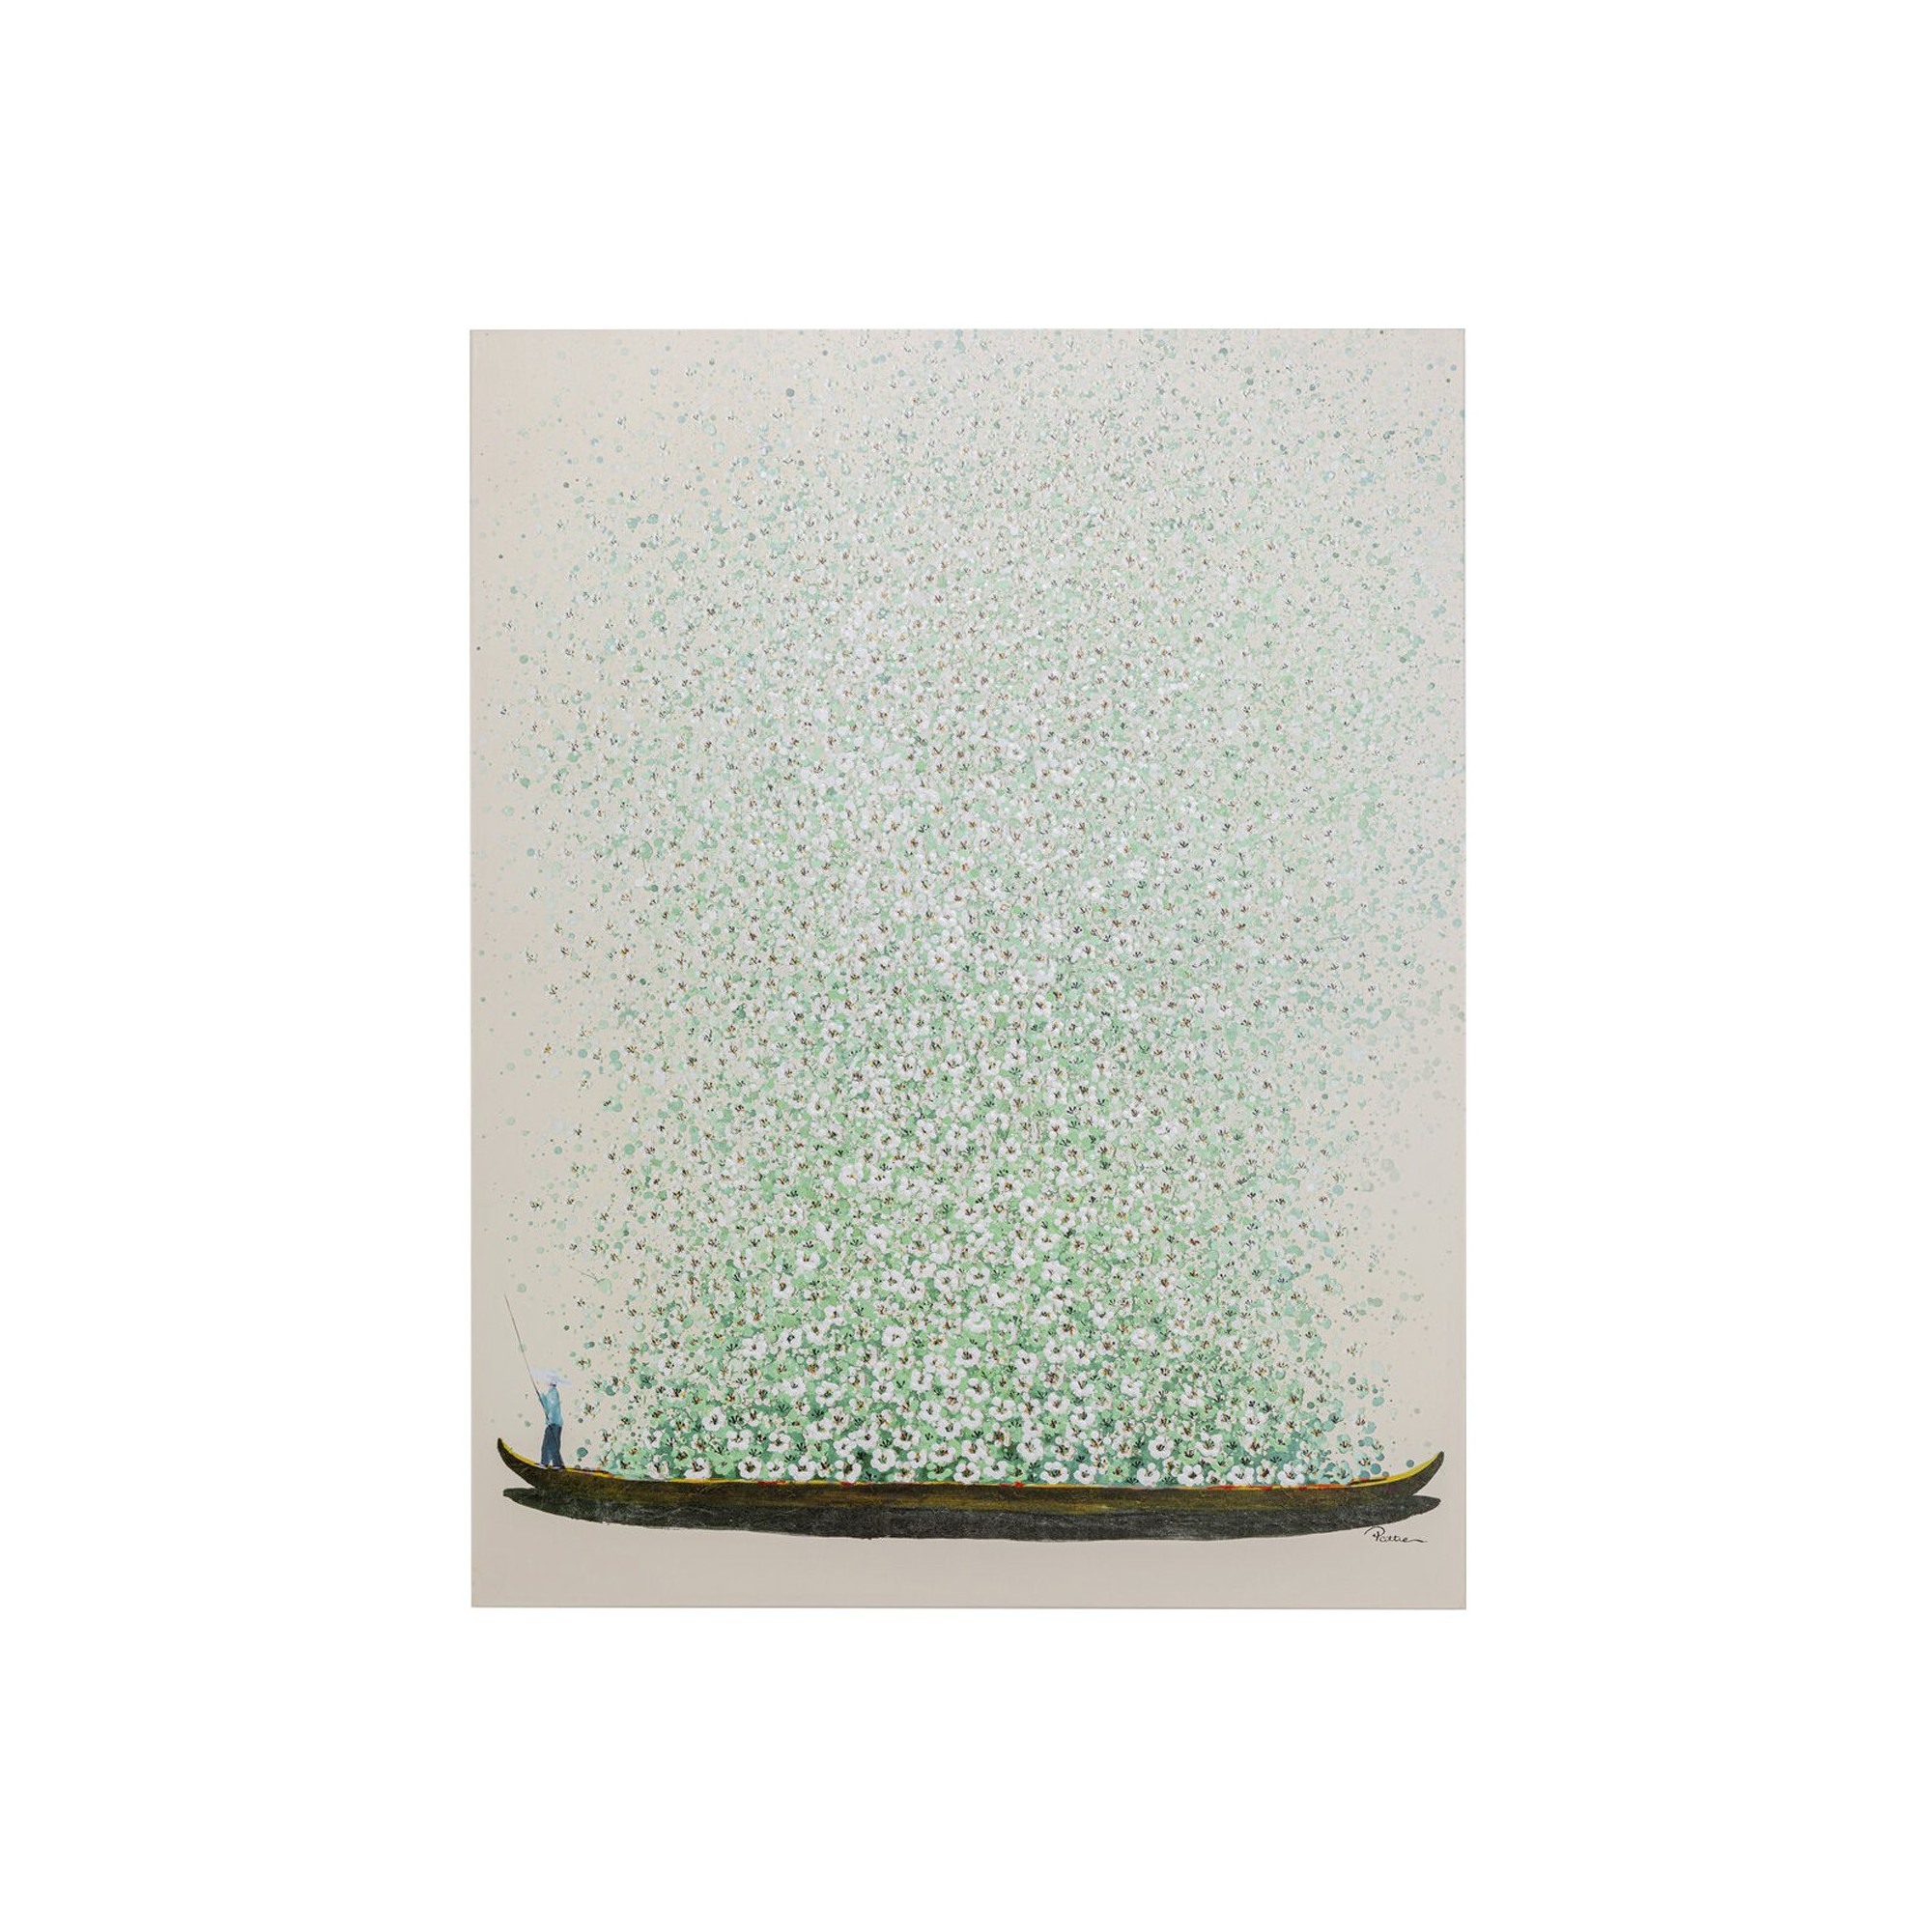 Tableau Touched fleurs pirogue beige et vert 120x160cm Kare Design